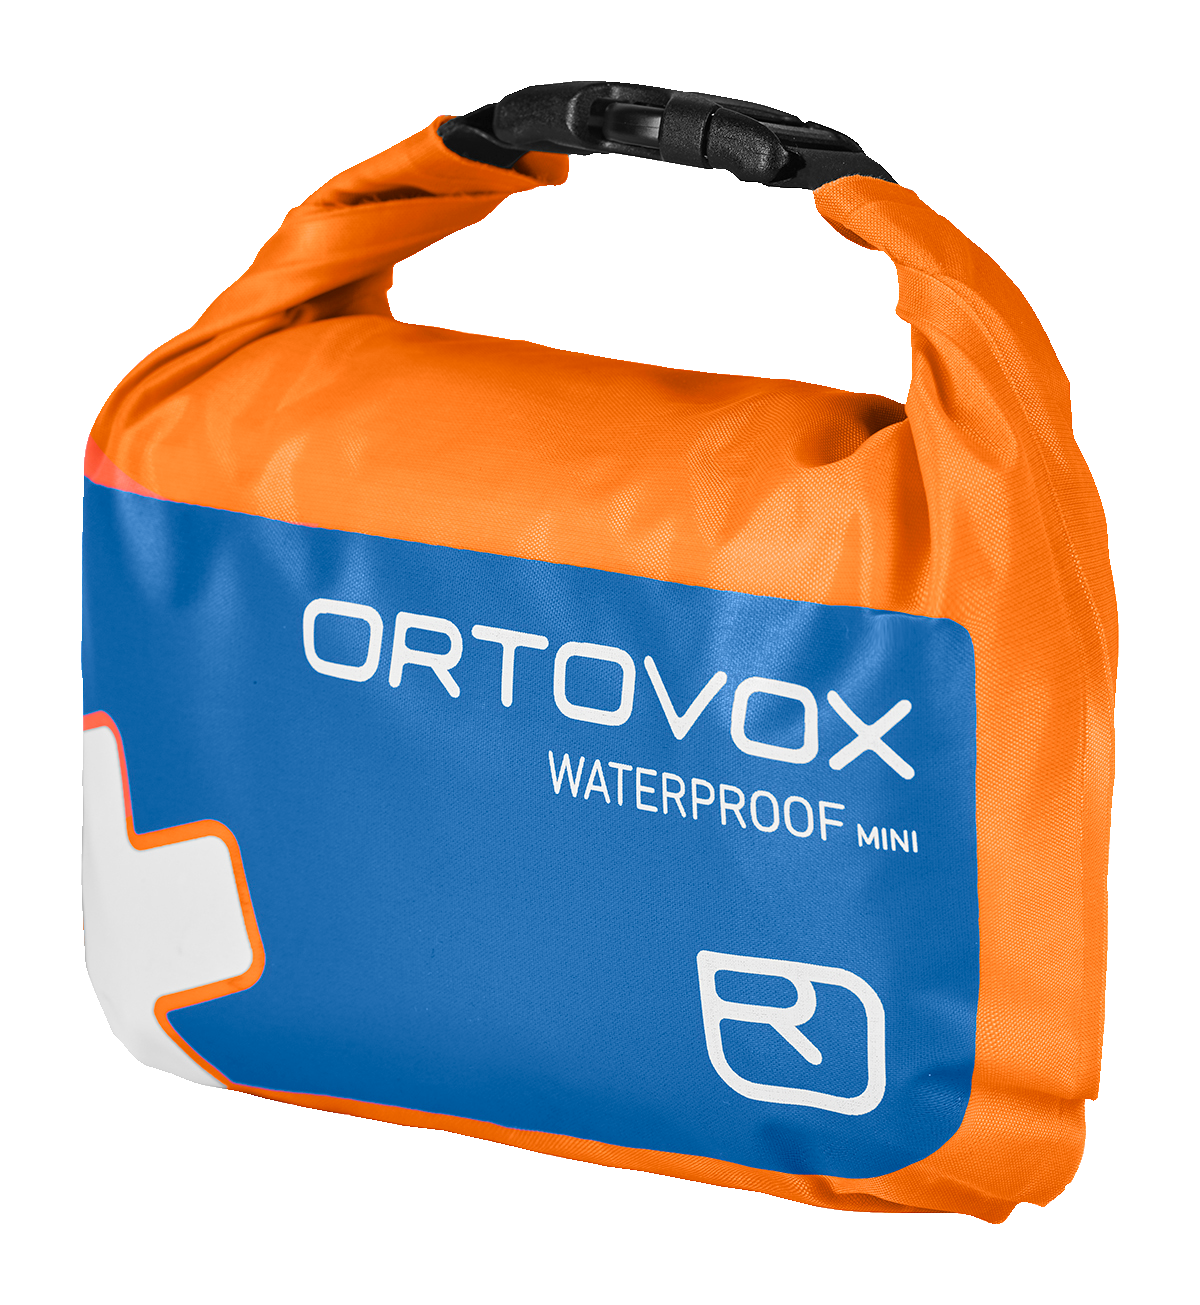 Ortovox First Aid Waterproof Mini - BotiquÌn